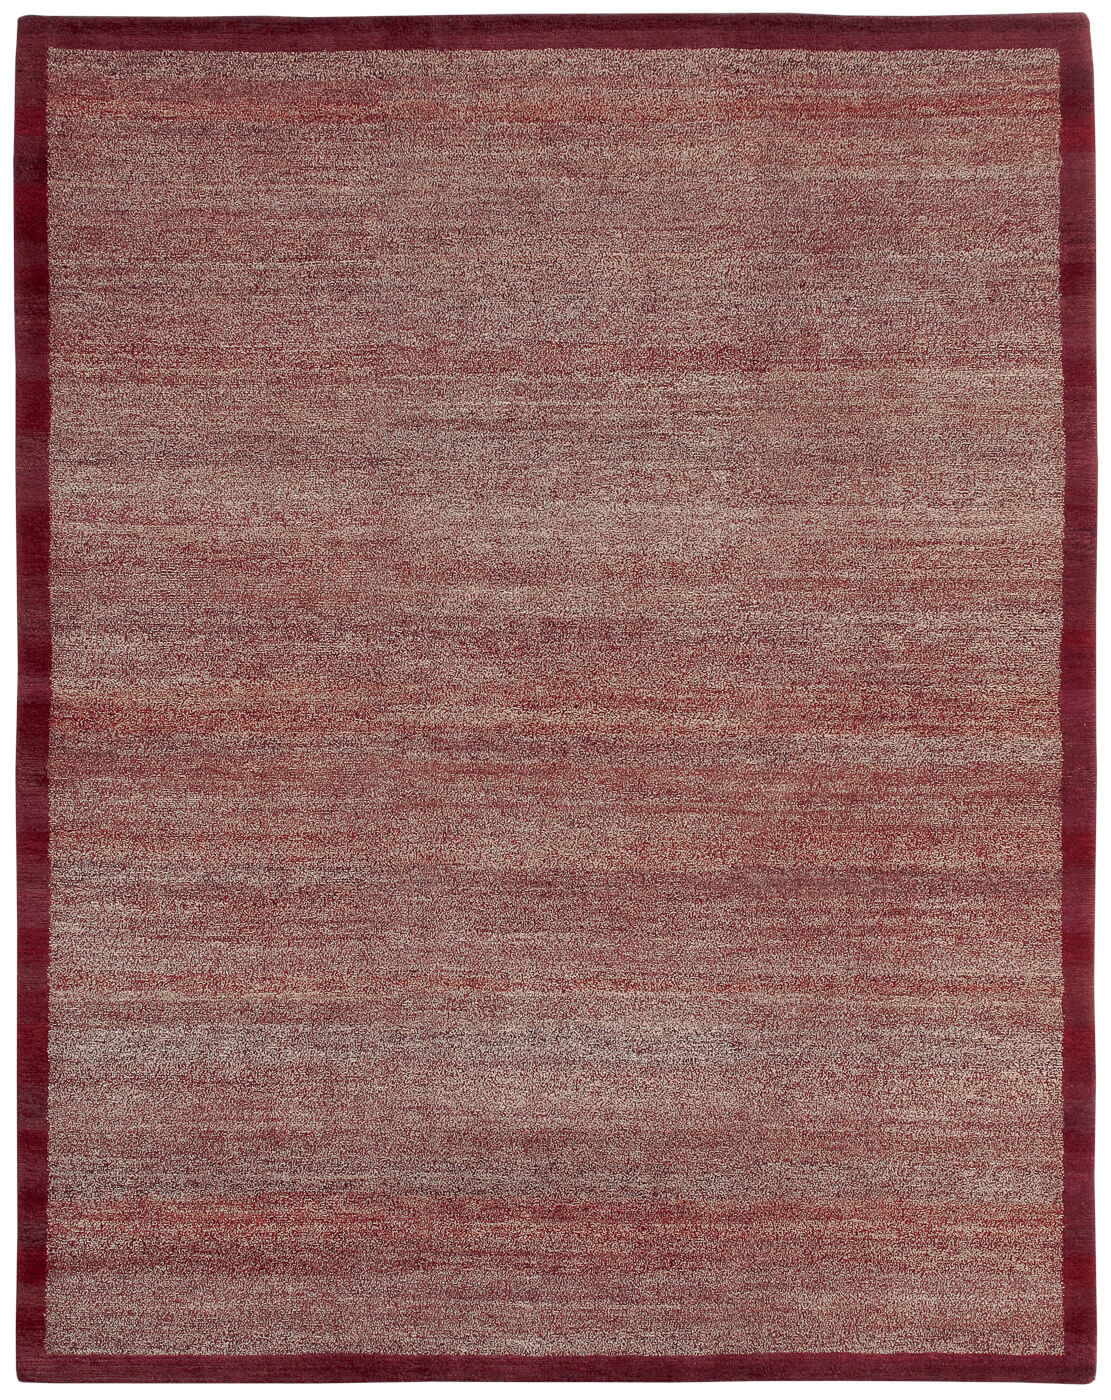 Border Dark Red Luxury Hand-woven Rug ☞ Size: 200 x 300 cm